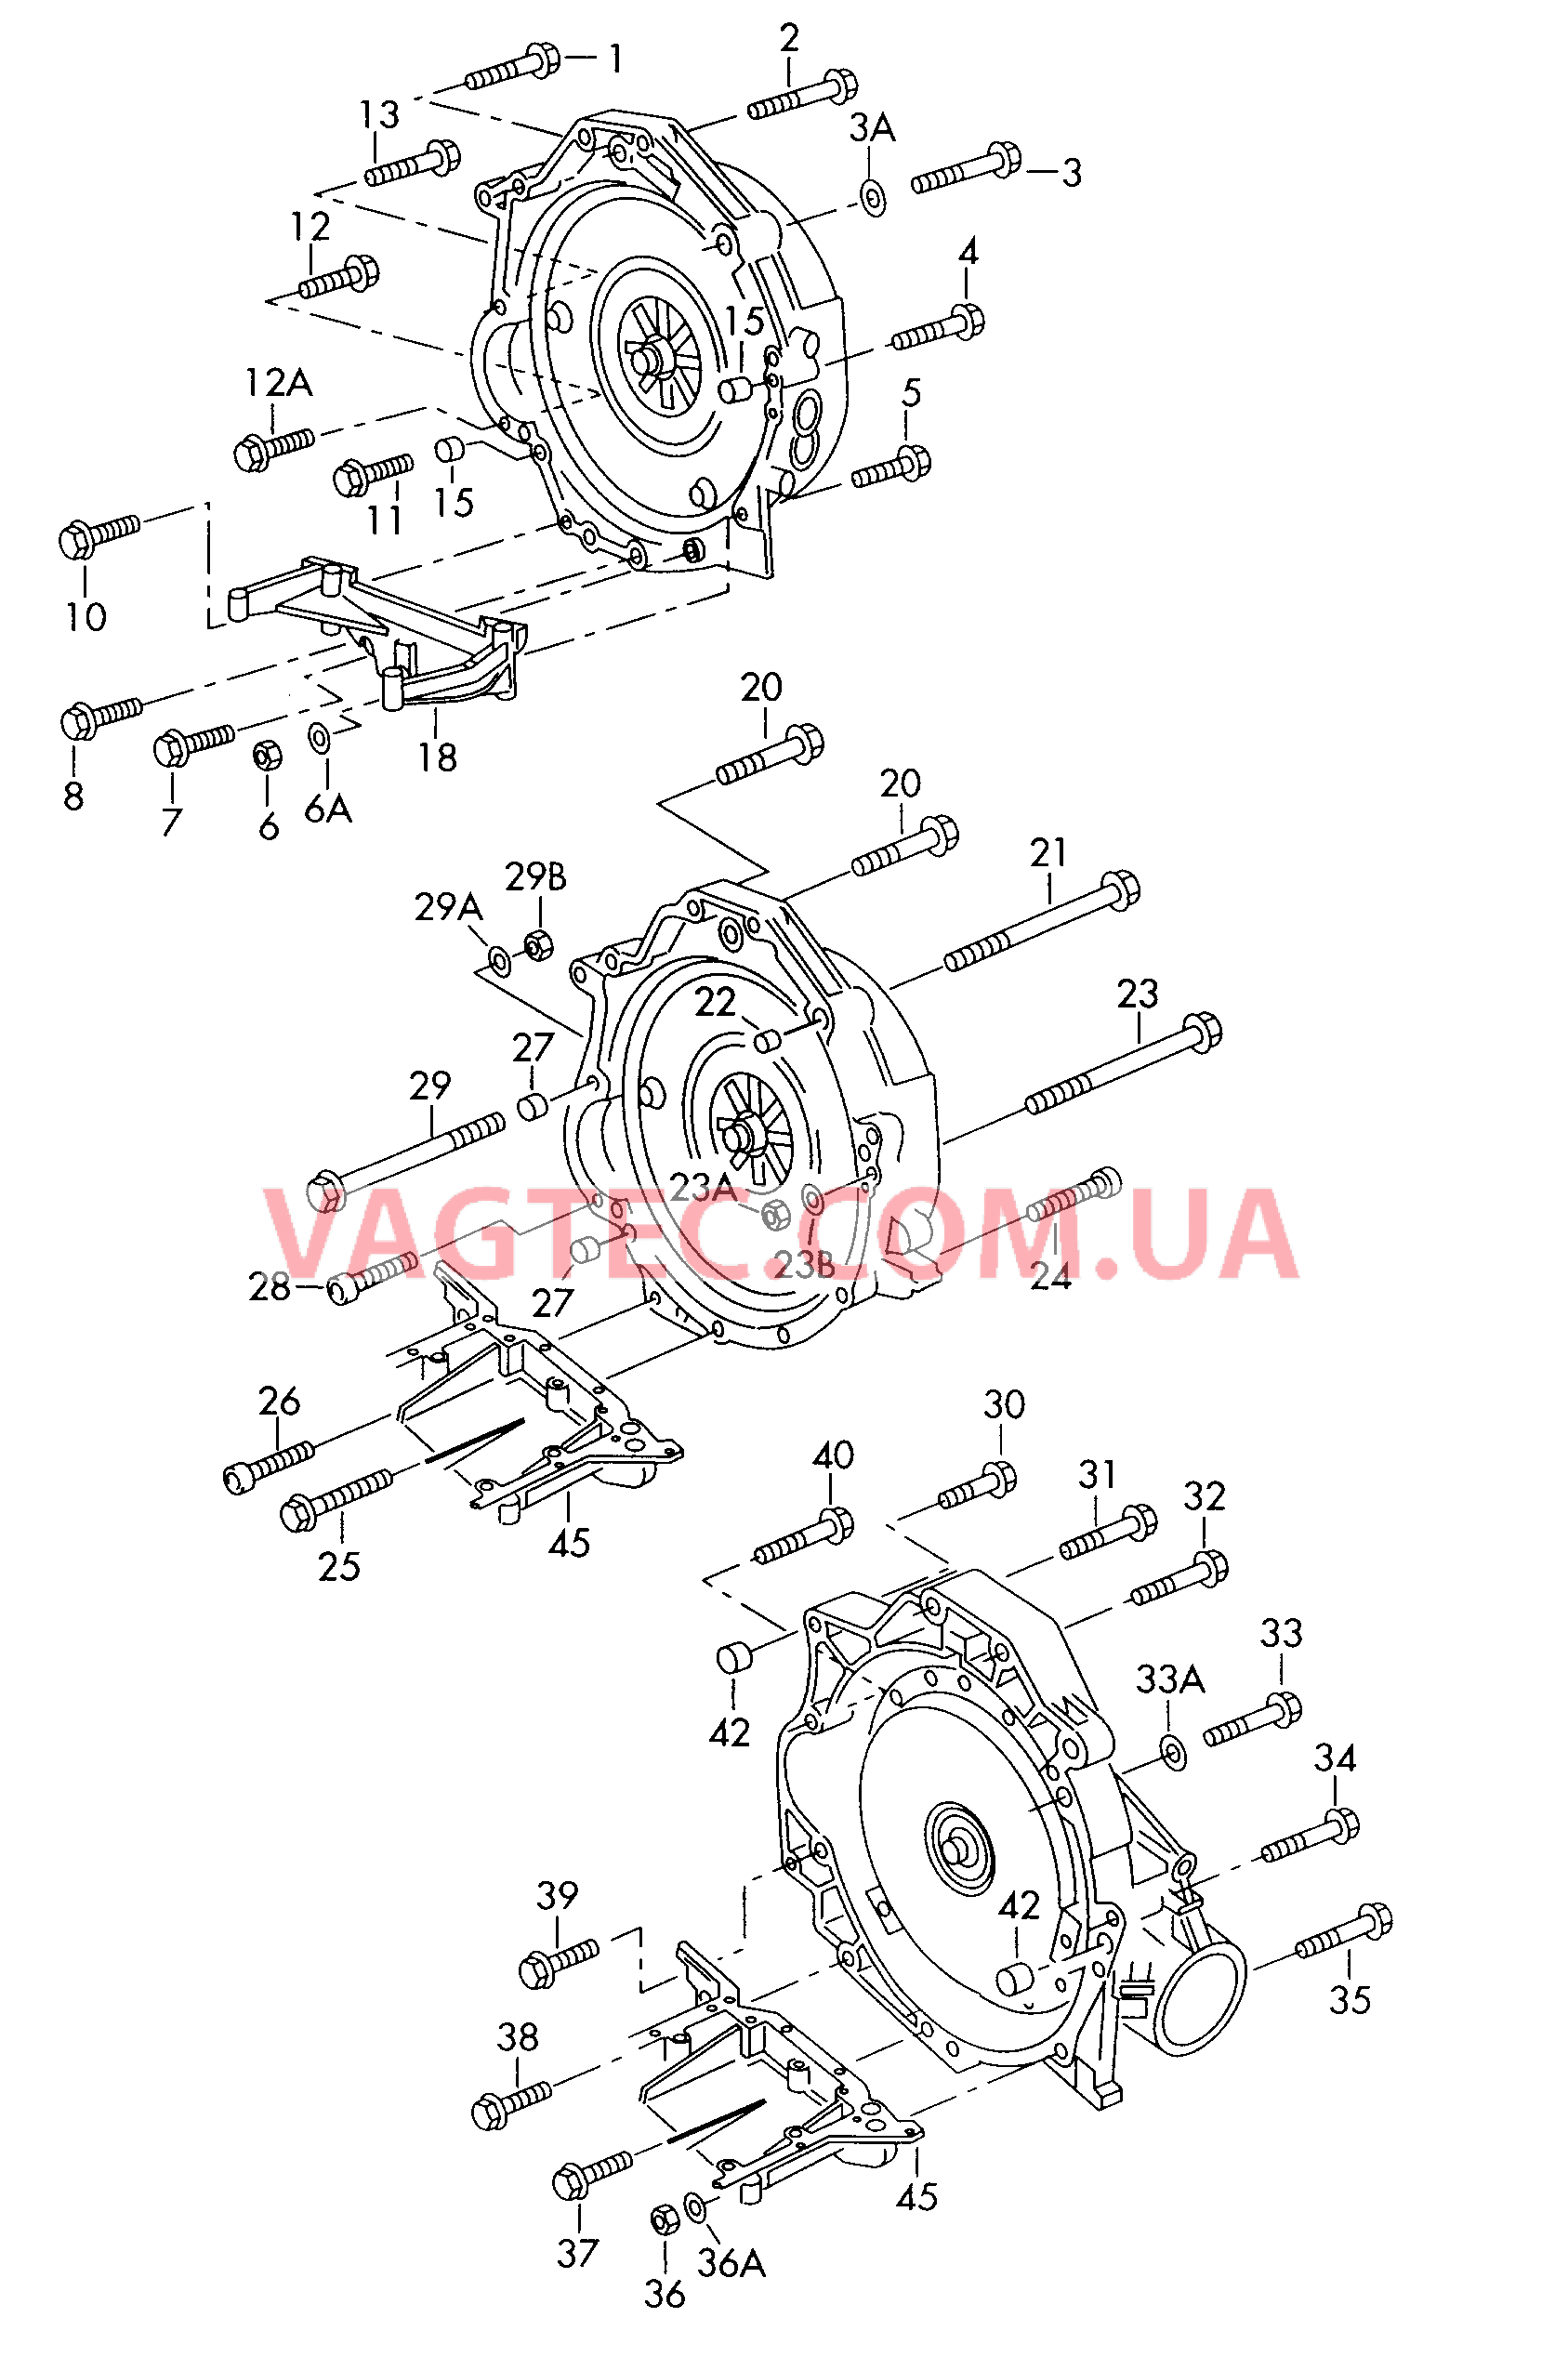  AUDI A4 Детали крепления для двигателя и КП  для 4-ступенчатой АКП для 5-ступенчатой АКП  для AUDI A4 2001